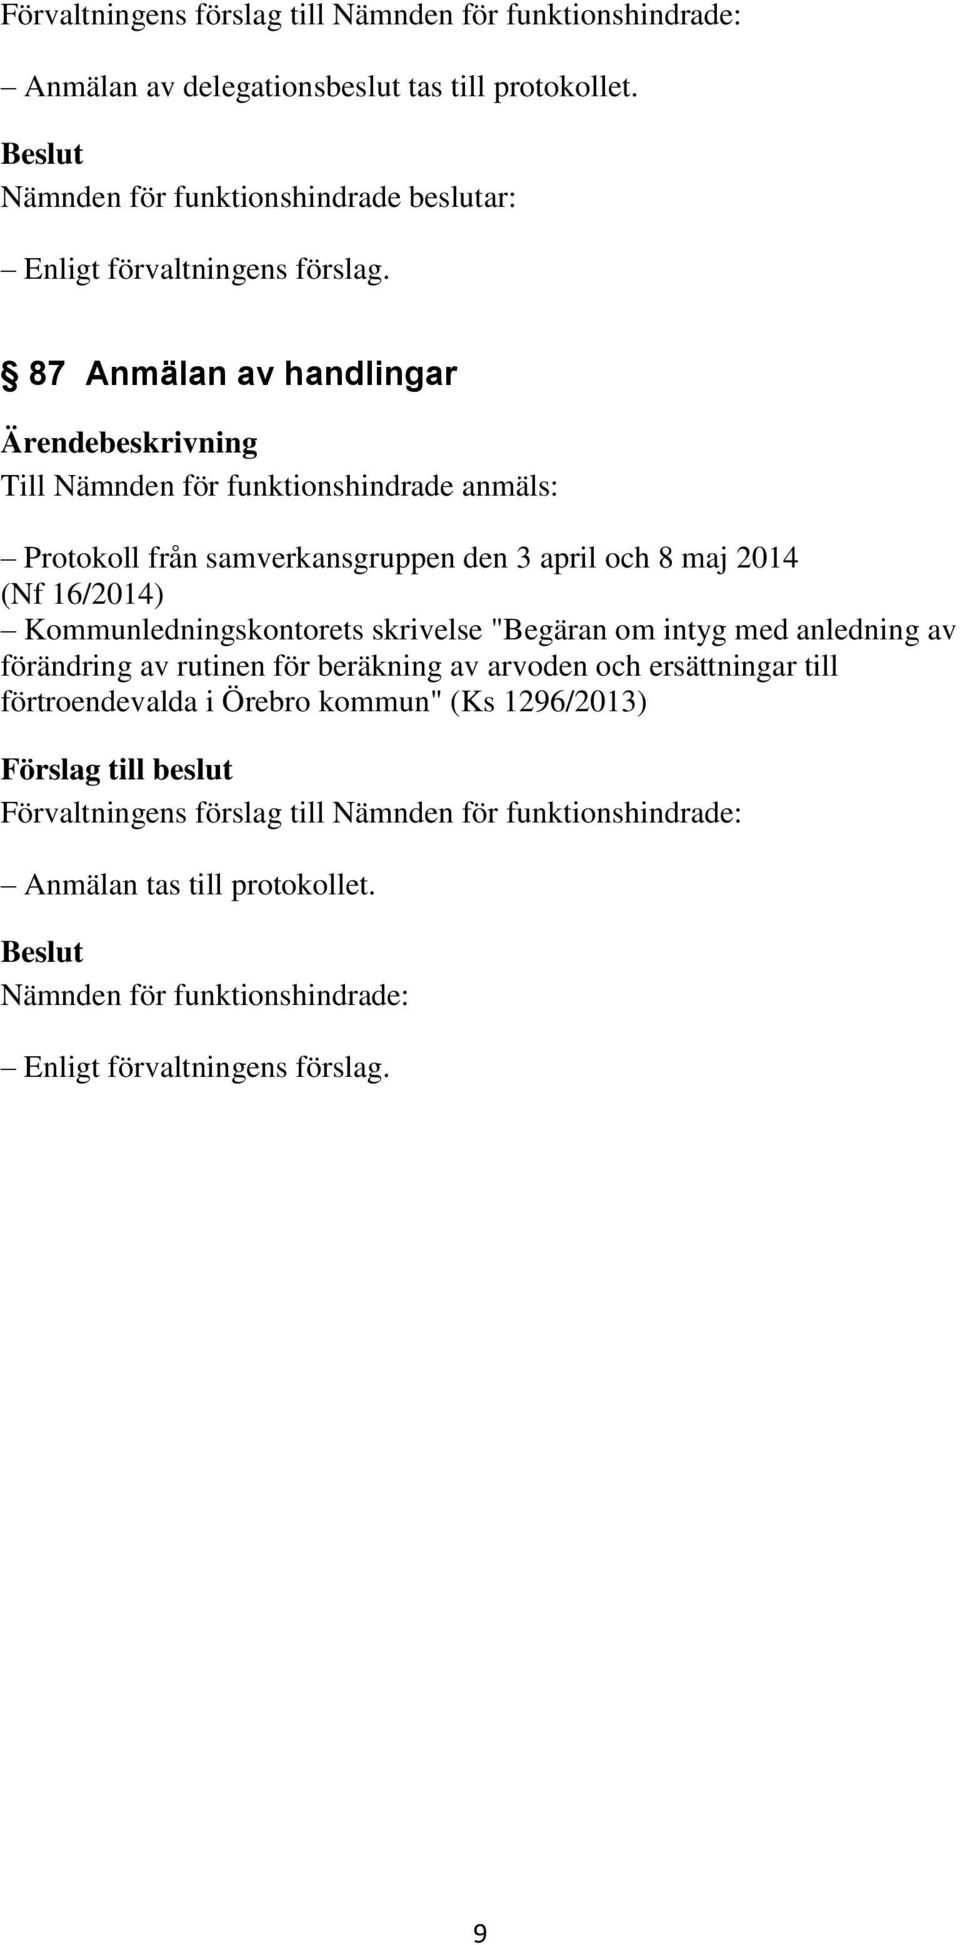 april och 8 maj 2014 (Nf 16/2014) Kommunledningskontorets skrivelse "Begäran om intyg med anledning av